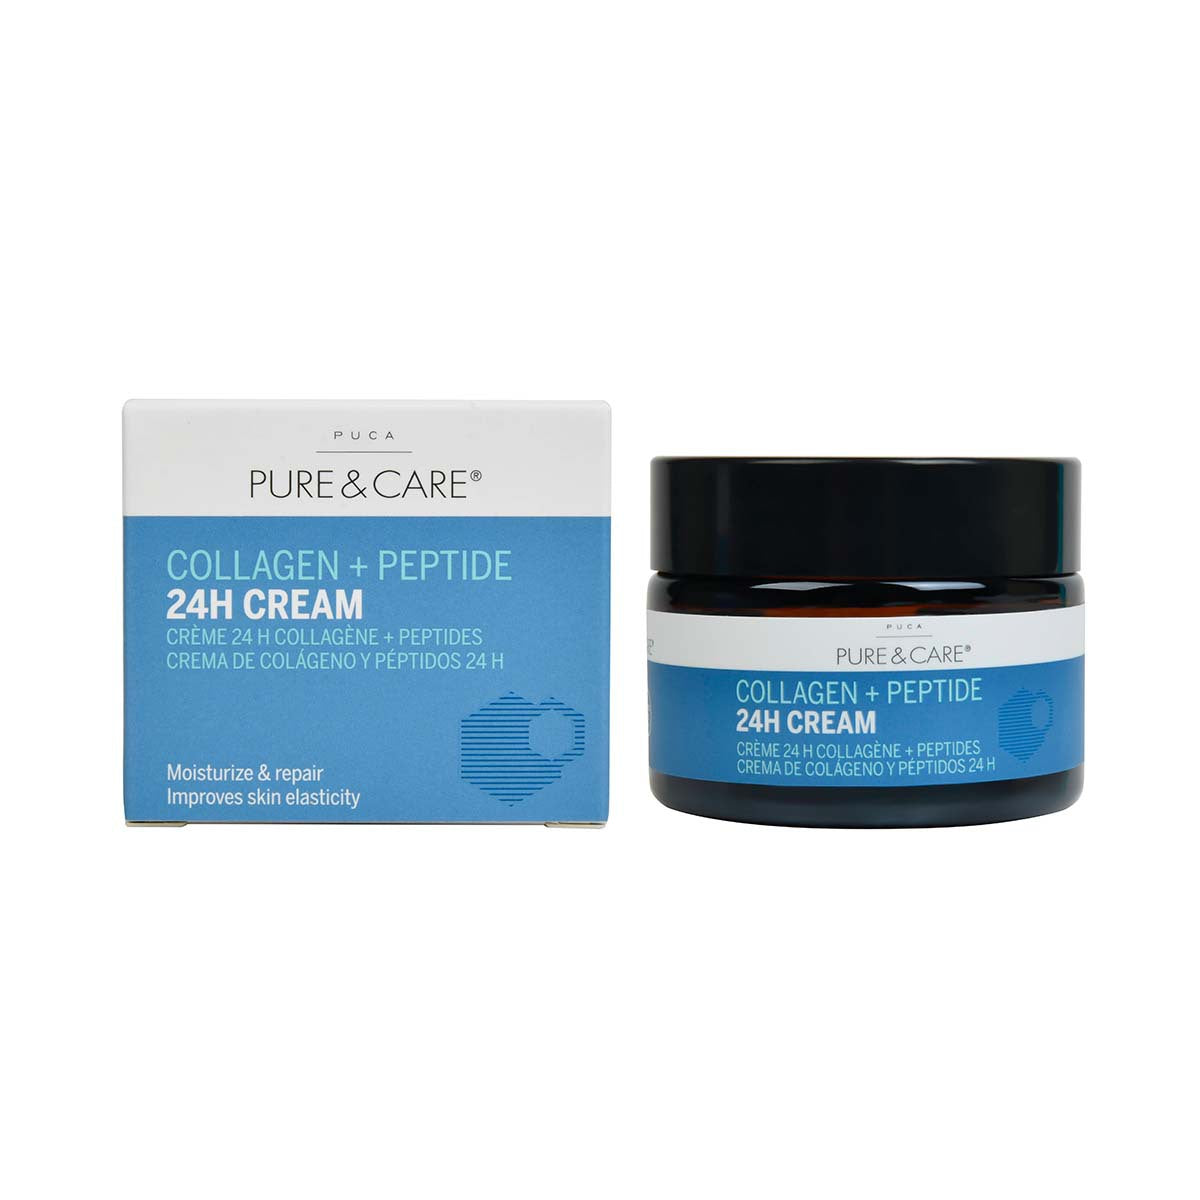 Collagen + Peptide day and night Cream I PUCA - PURE & CARE